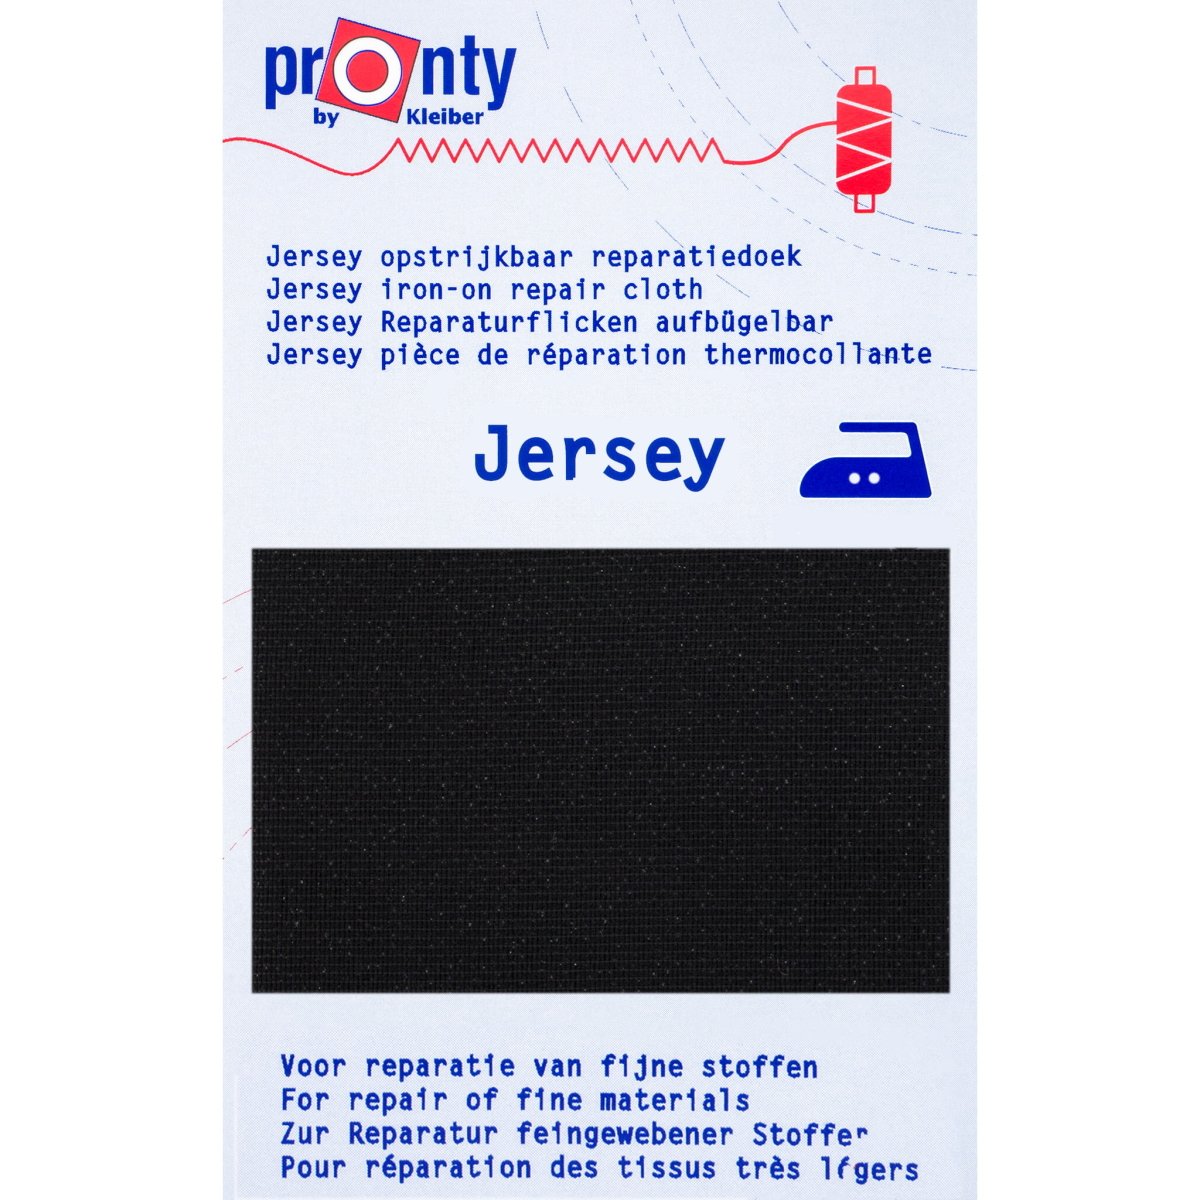 Reparatiedoek Pronty Jersey voor rekbare stoffen 12x45cm Repraratiedoek RPD-PRONTY-JERSEY-ZWART 8714772095059 - Fourniturenkraam.nl